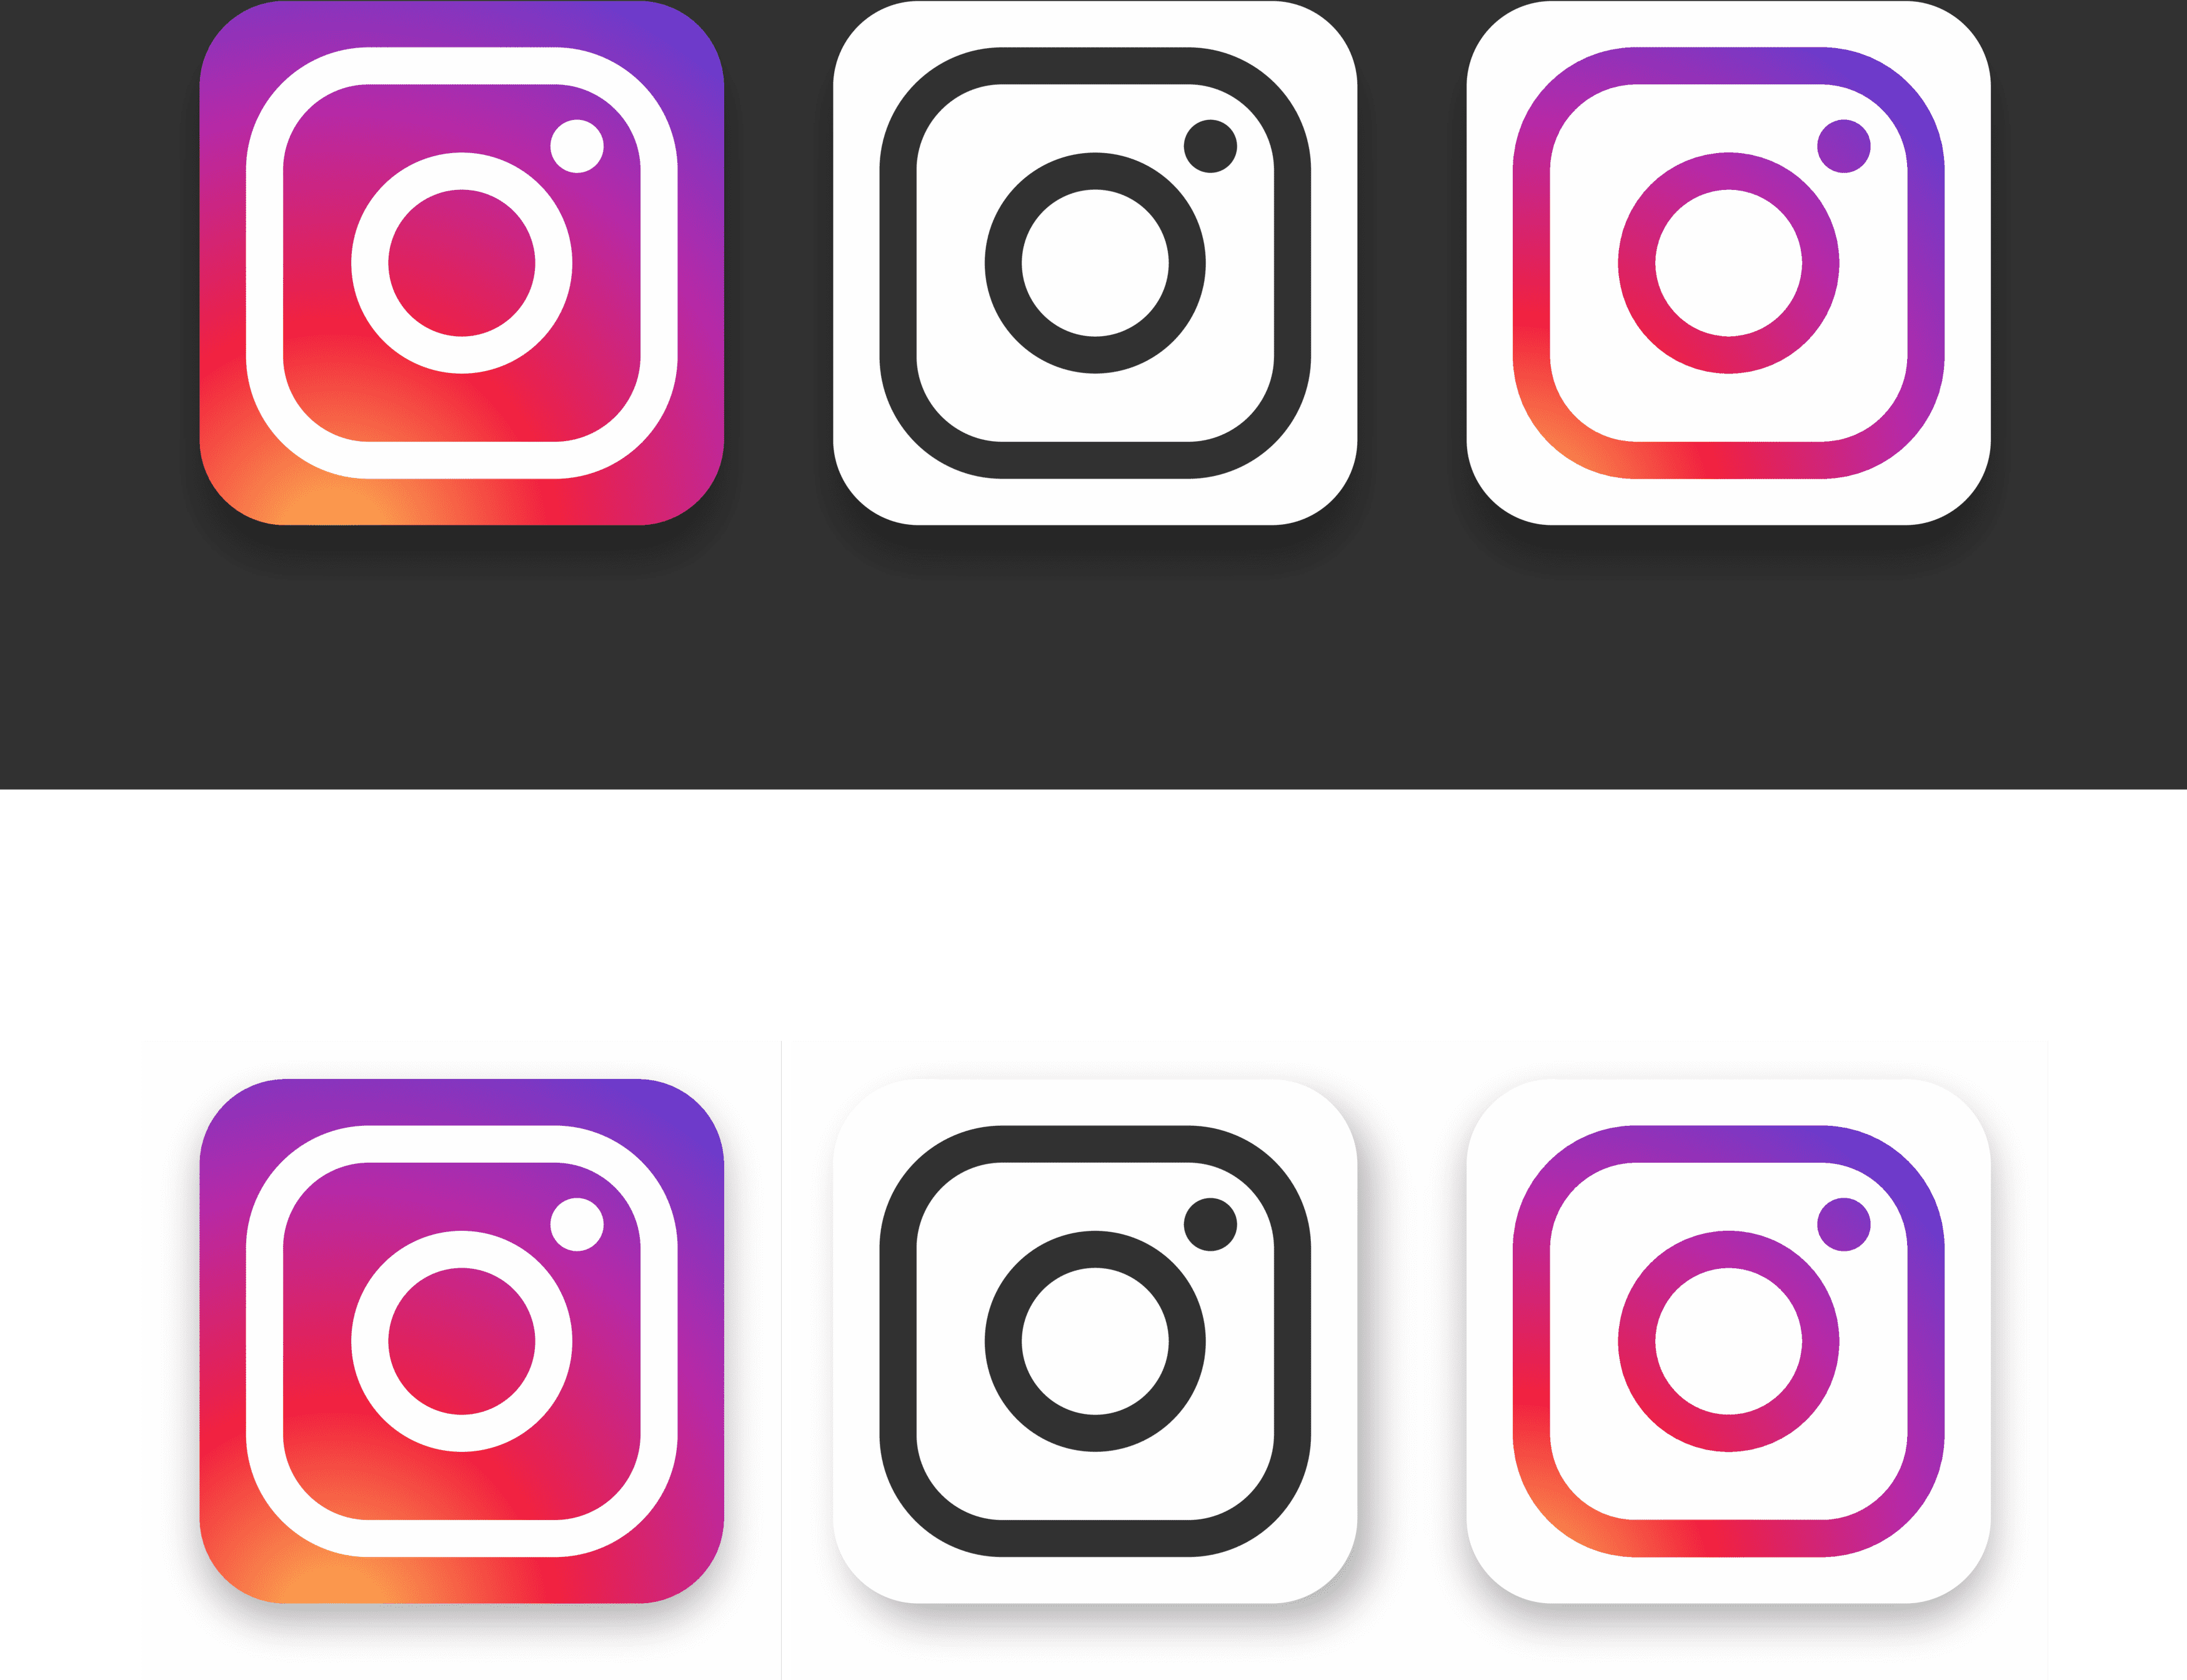 دانلود عکس لوگو های اینستاگرام با پس زمینه و بدون پس زمینه رایگان